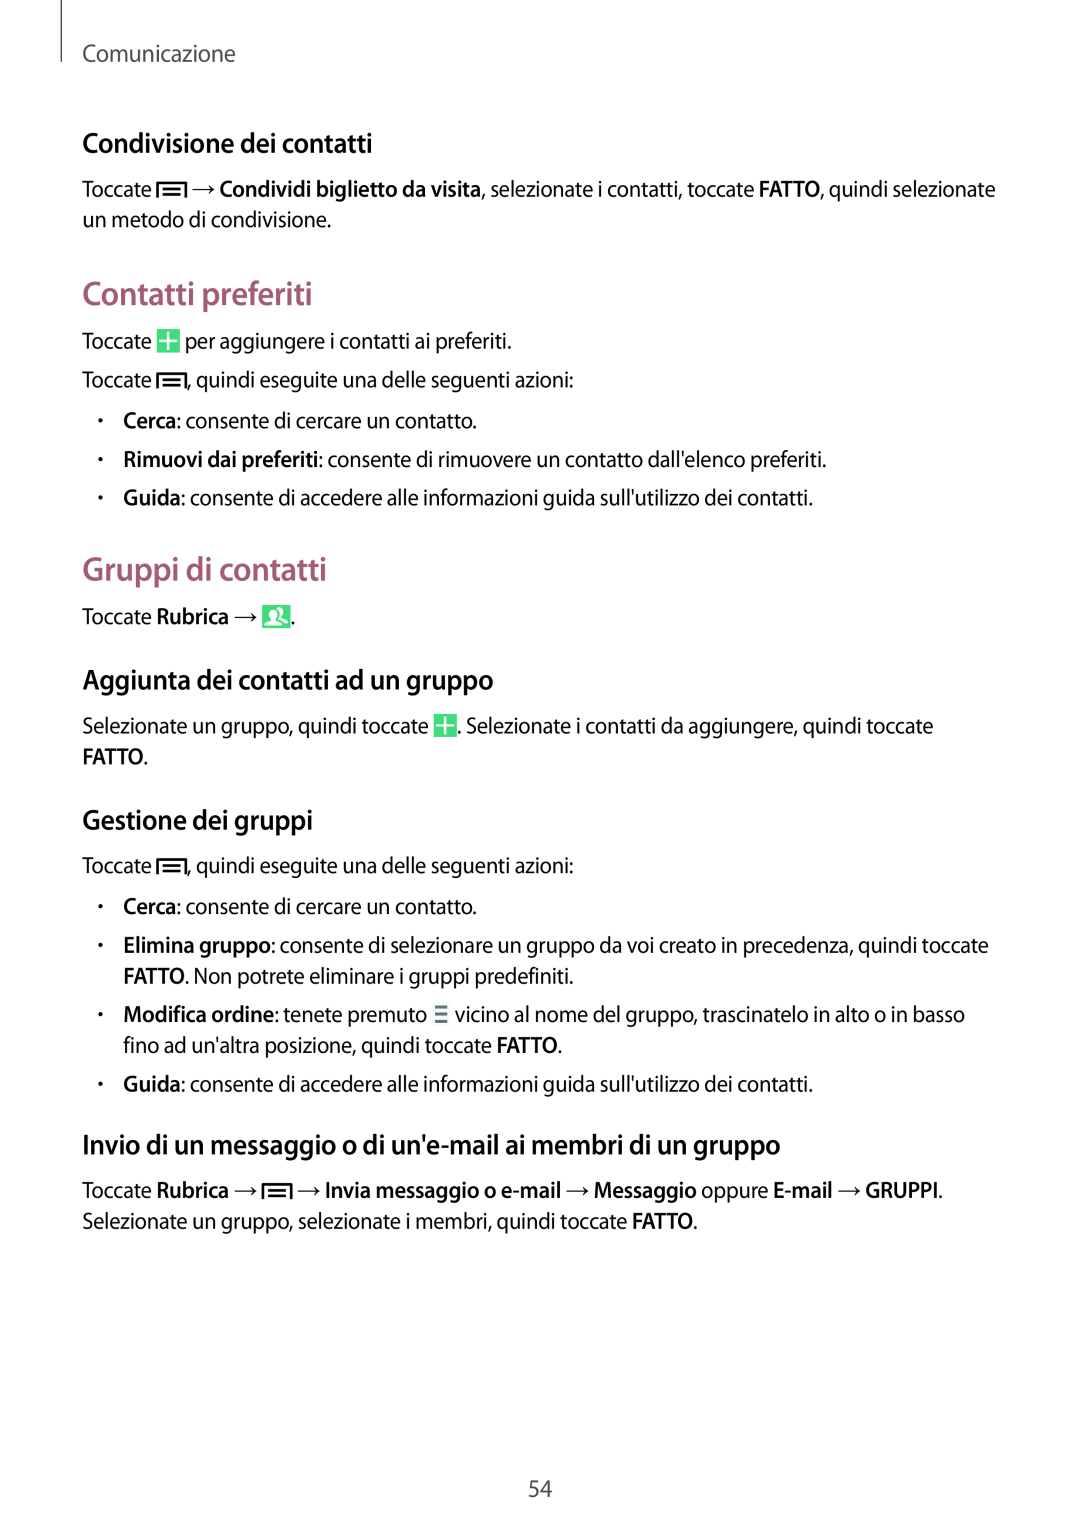 Samsung GT-I9515ZSAHUI manual Contatti preferiti, Gruppi di contatti, Condivisione dei contatti, Gestione dei gruppi, Fatto 